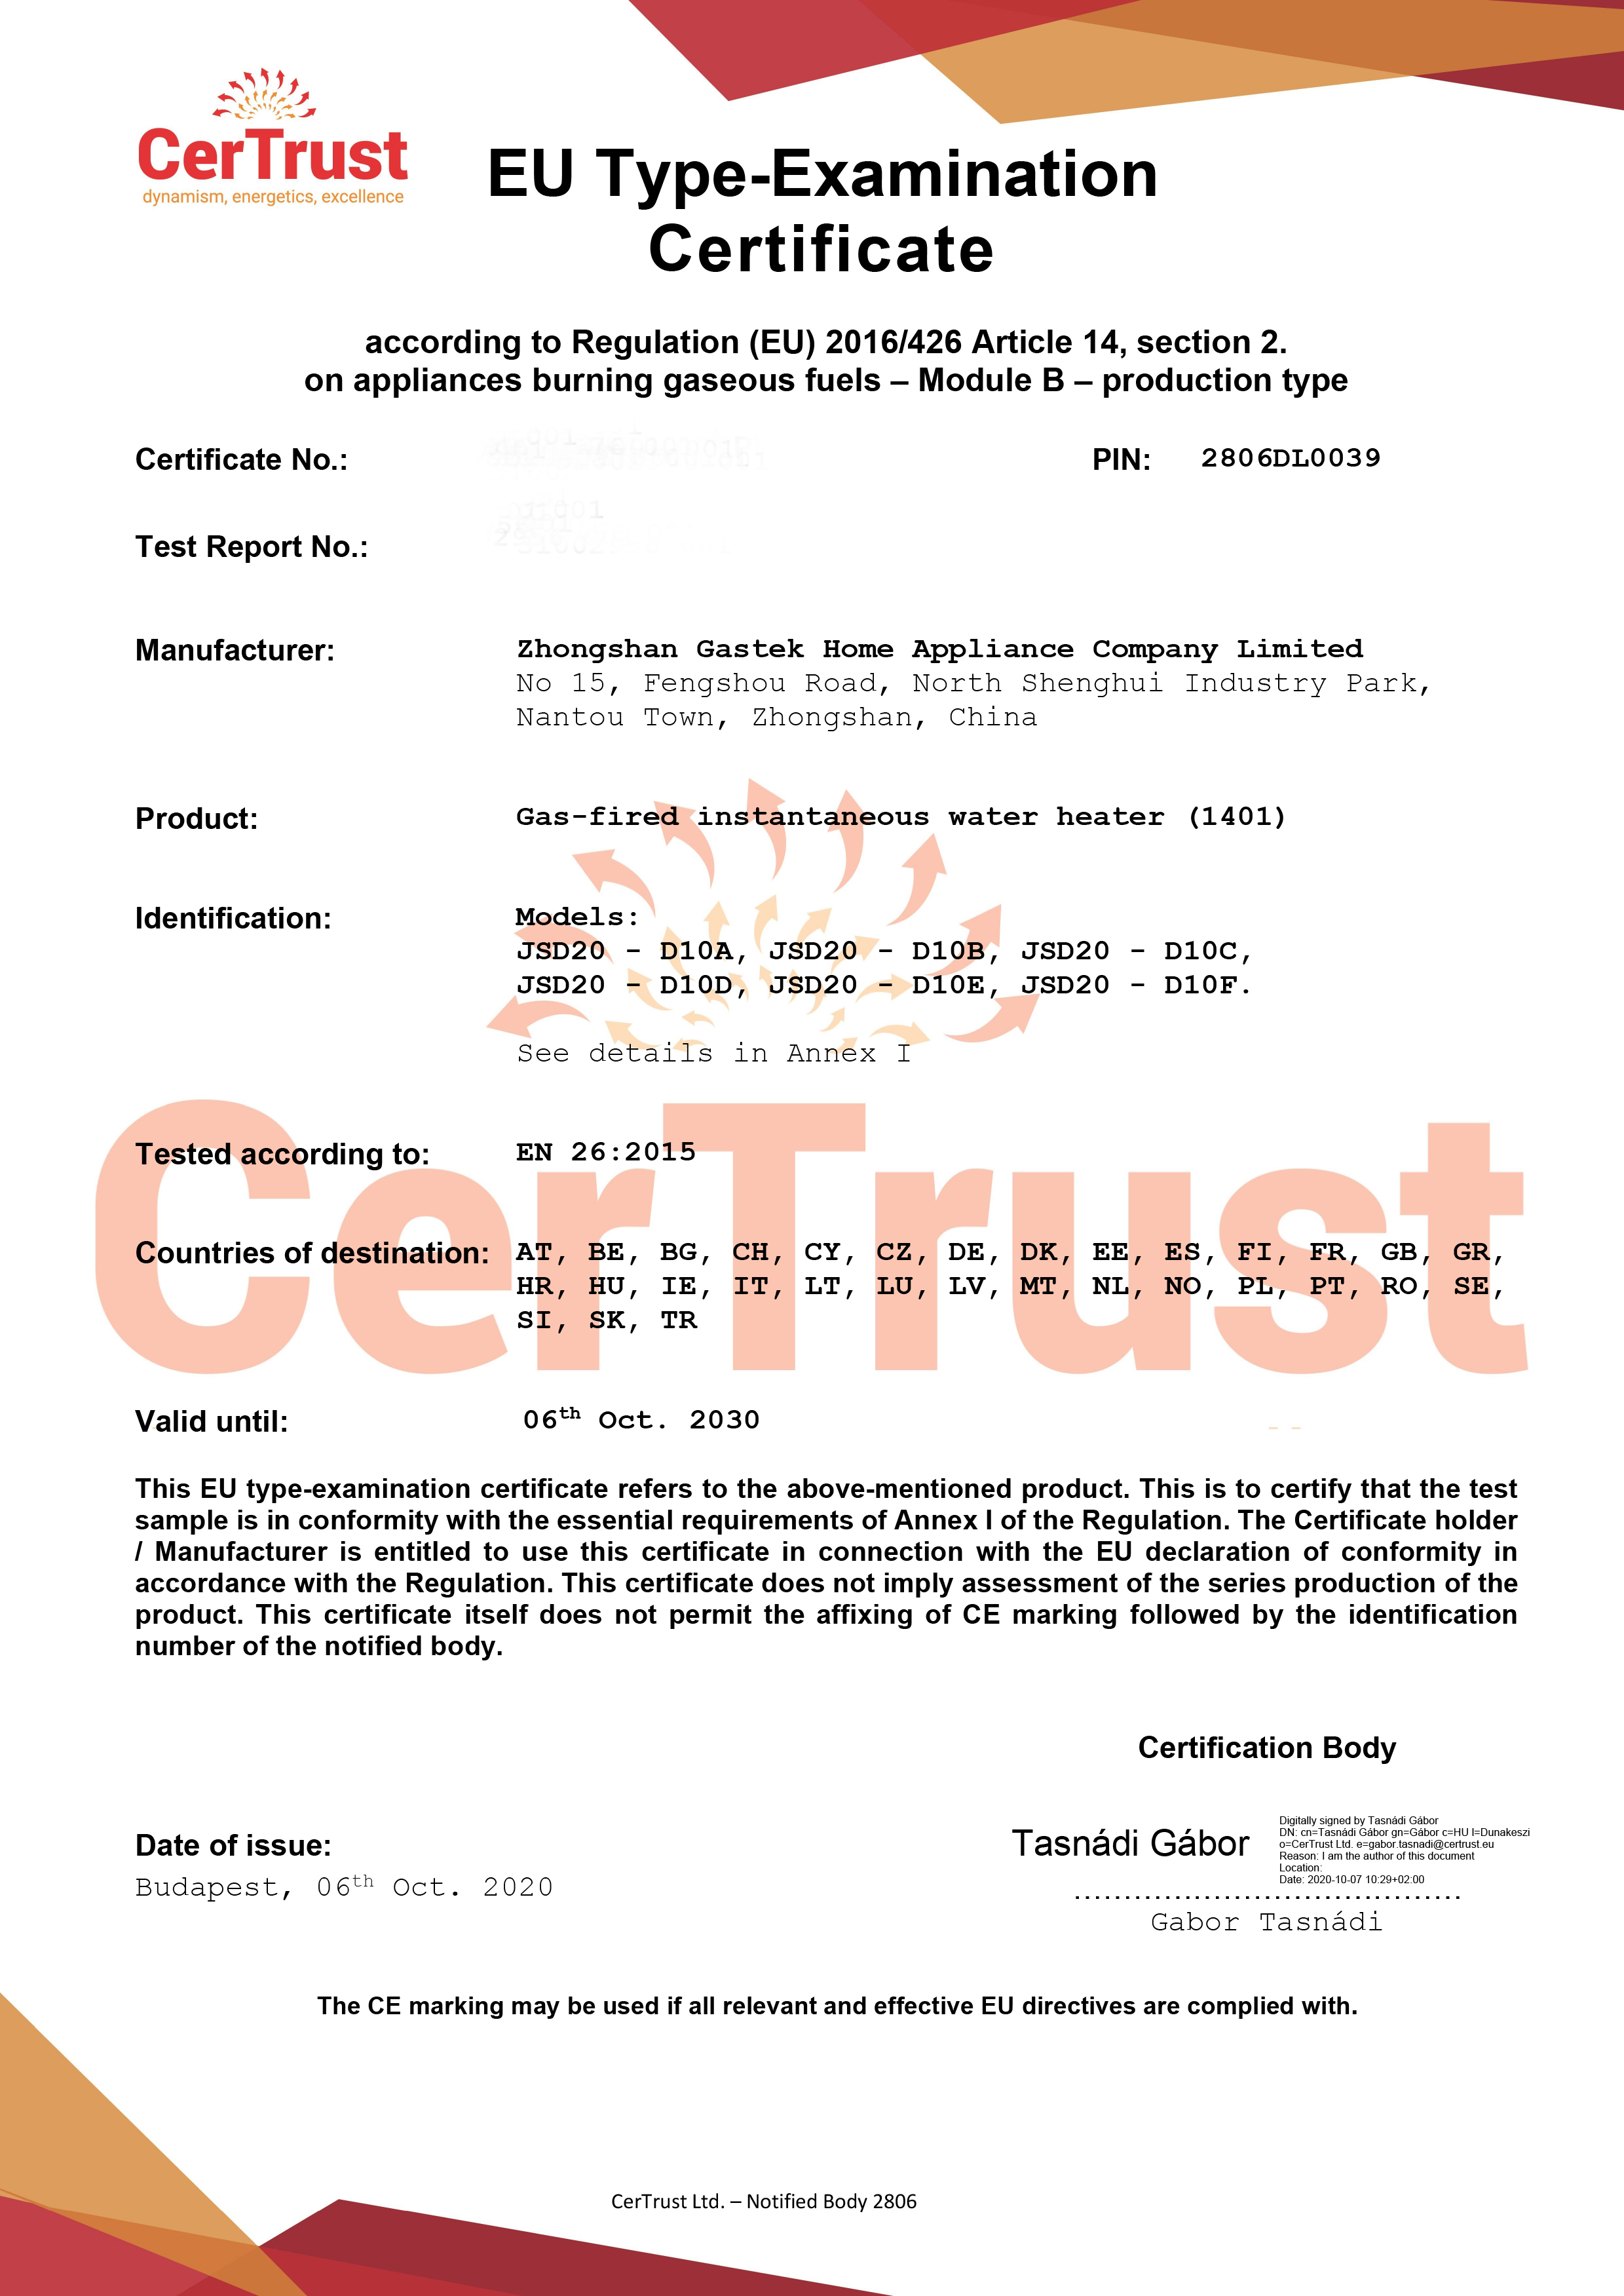 В октябре этого года Gastek получила сертификат CE на газовый водонагреватель.